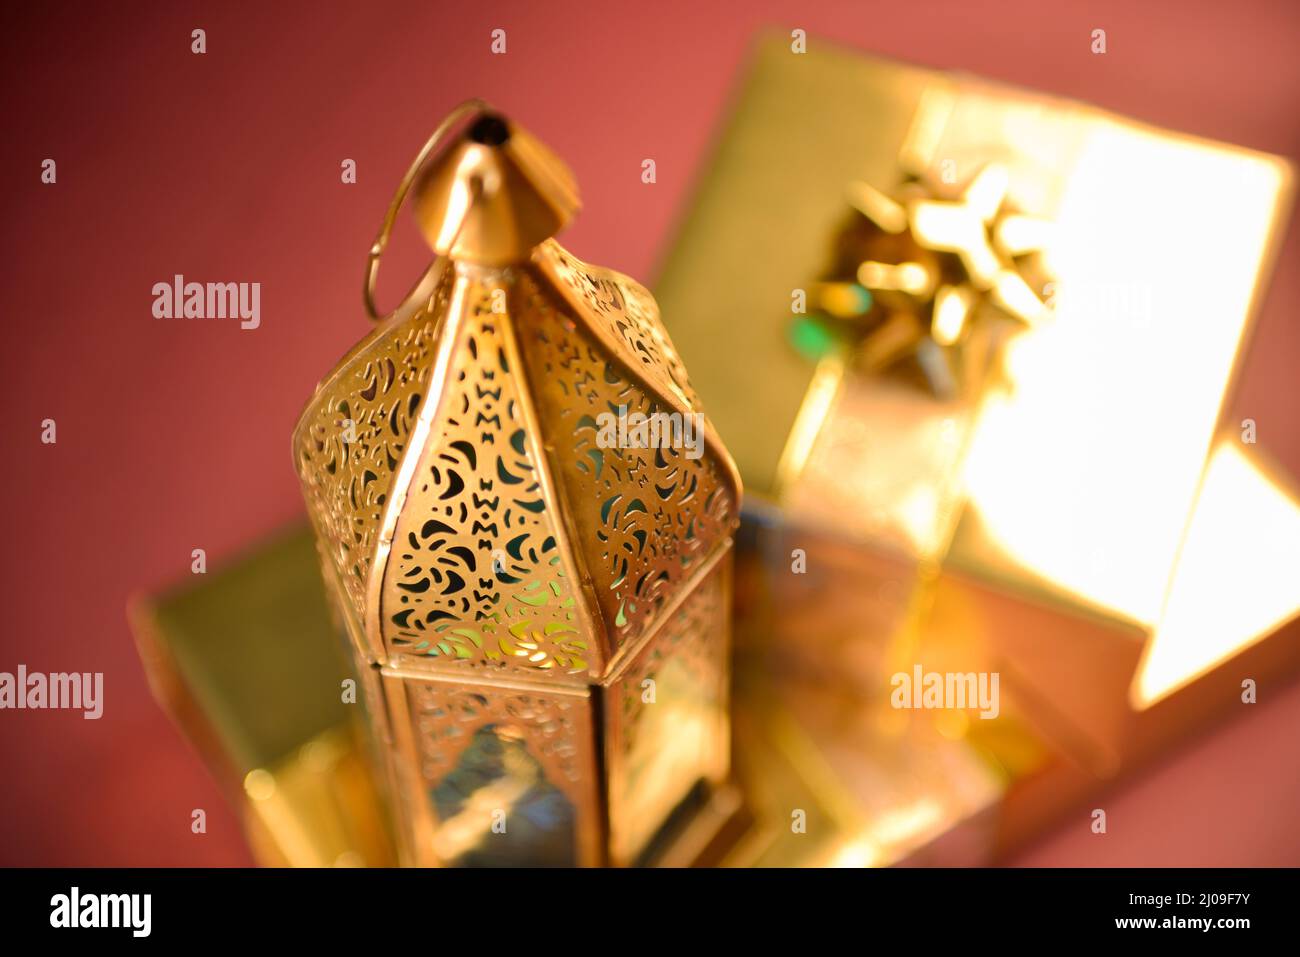 Ramadan-Lampe und goldene Geschenkbox, Eid festliche Feier Hintergrund mit Geschenkboxen und traditionellen Ramadan-Lampen. Stockfoto